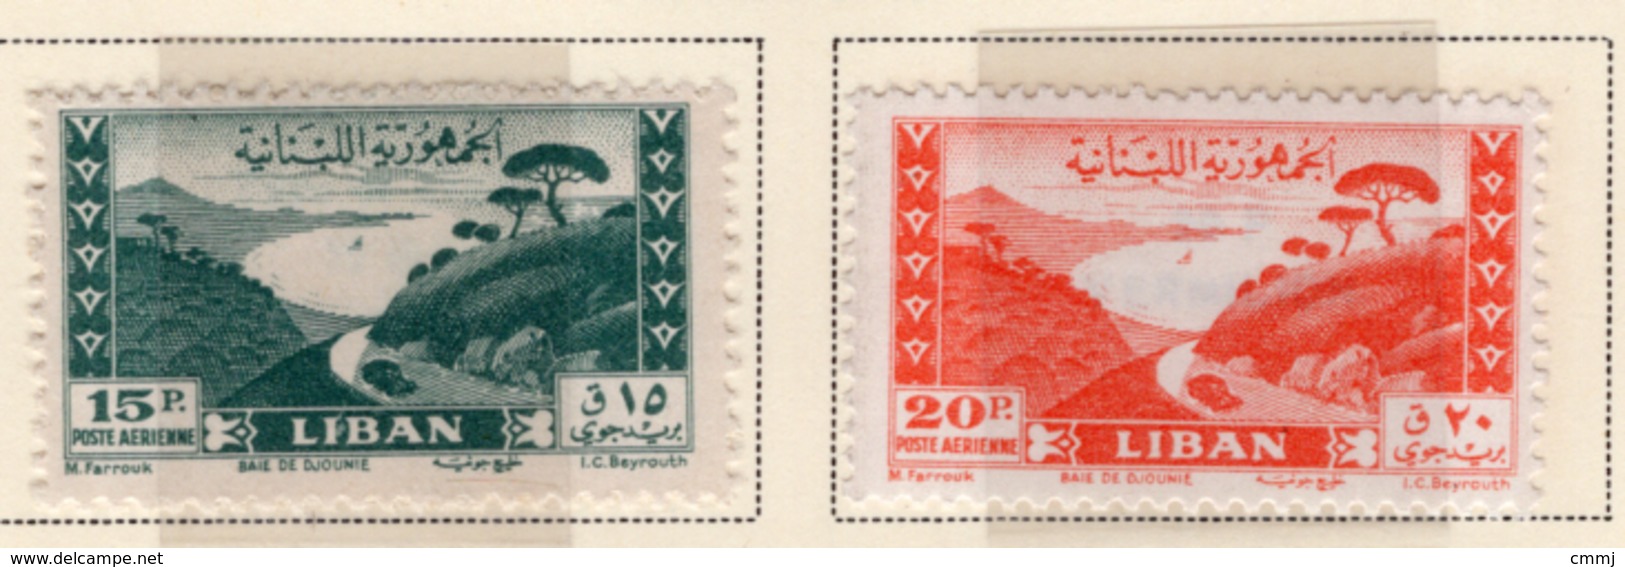 1949 - LIBANO - LEBANON - Mi. Nr.  422+423 - NH - (S03052019.....) - Libano